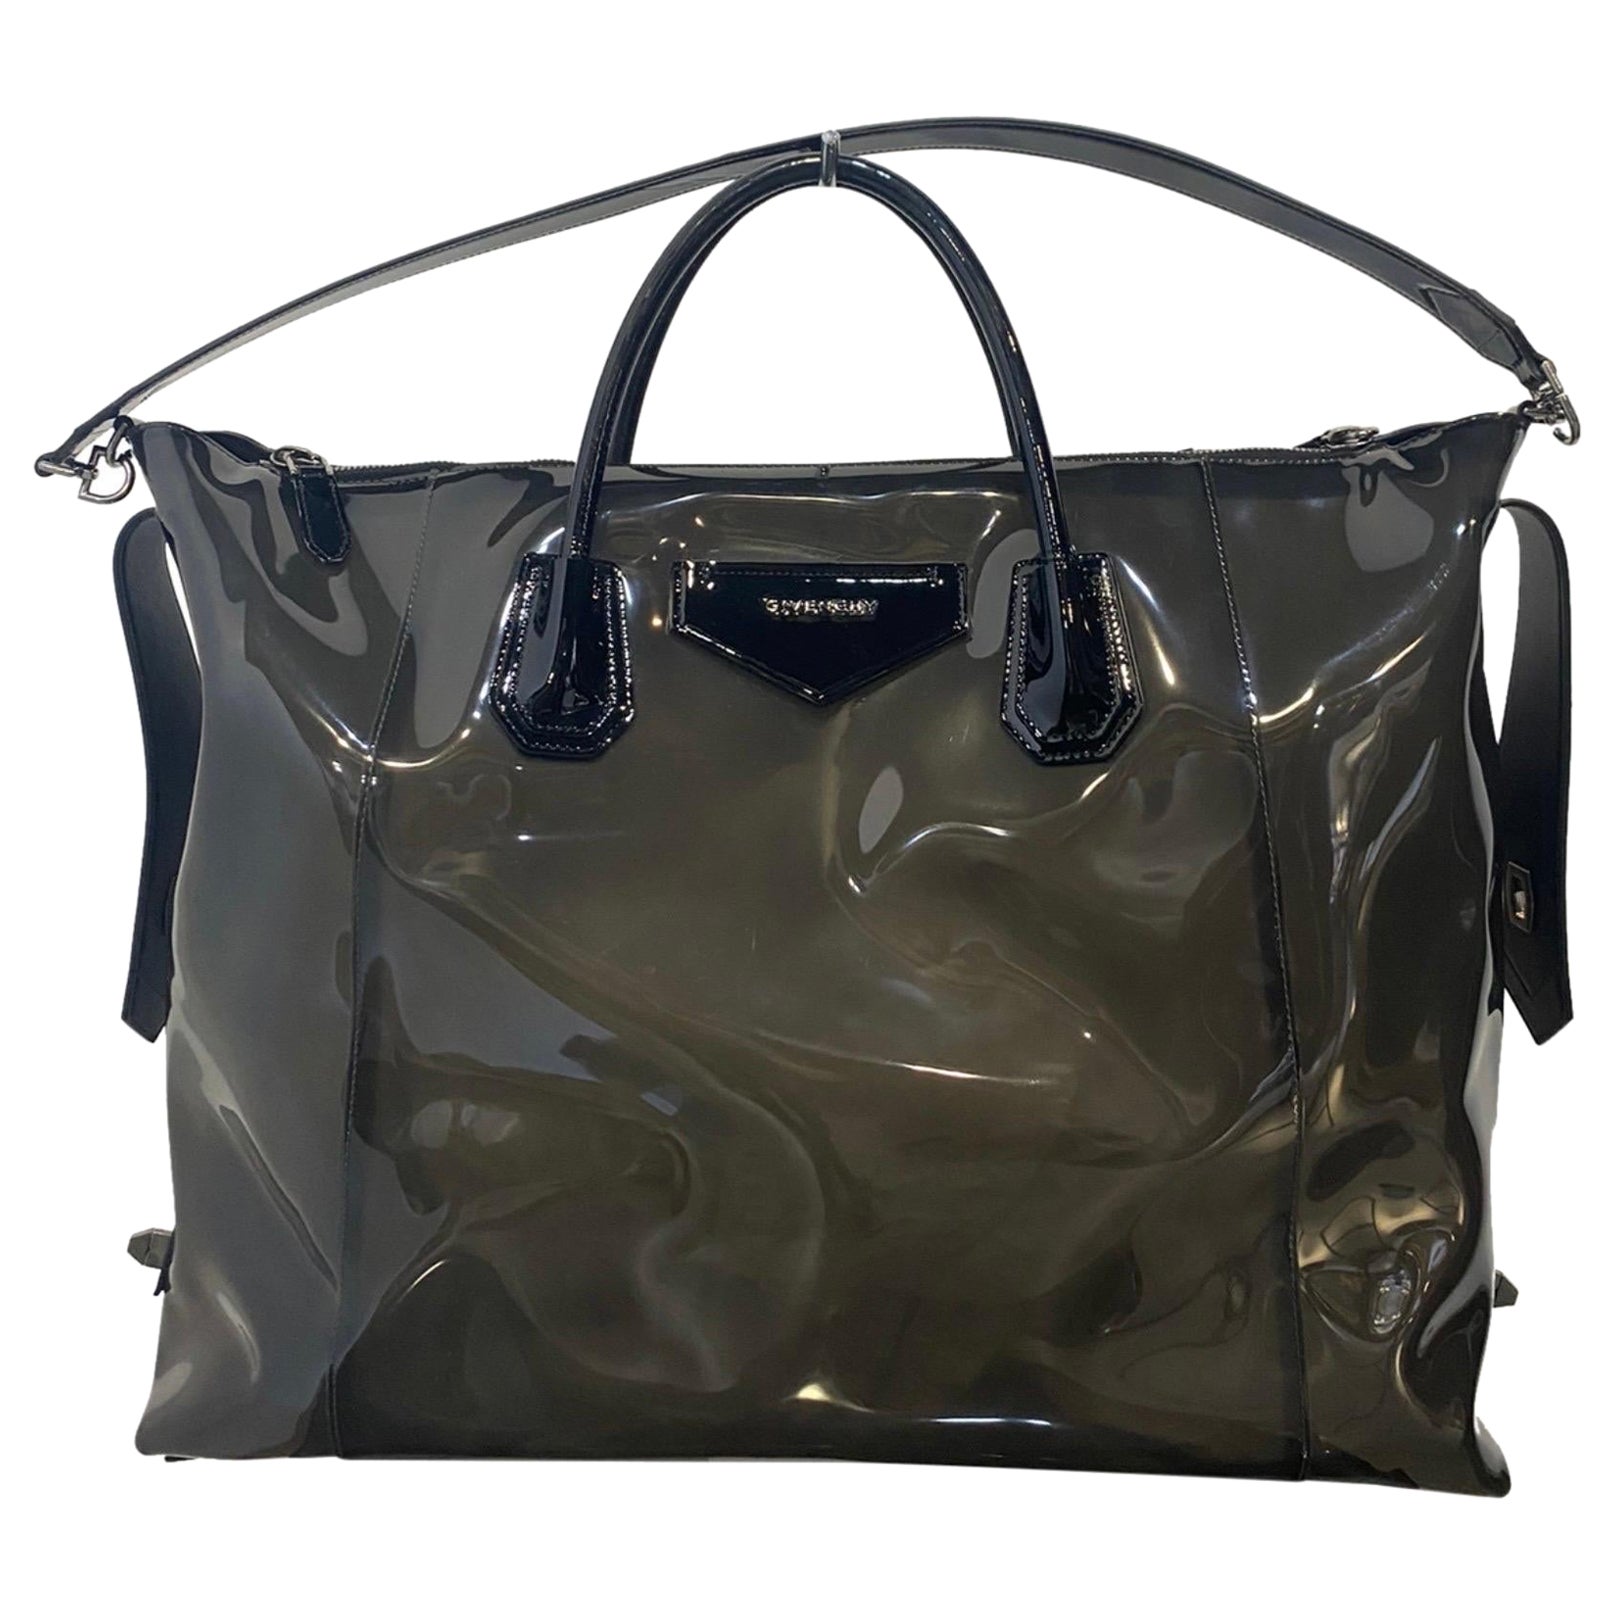 Givenchy Antigona transparent black plastic bag. 